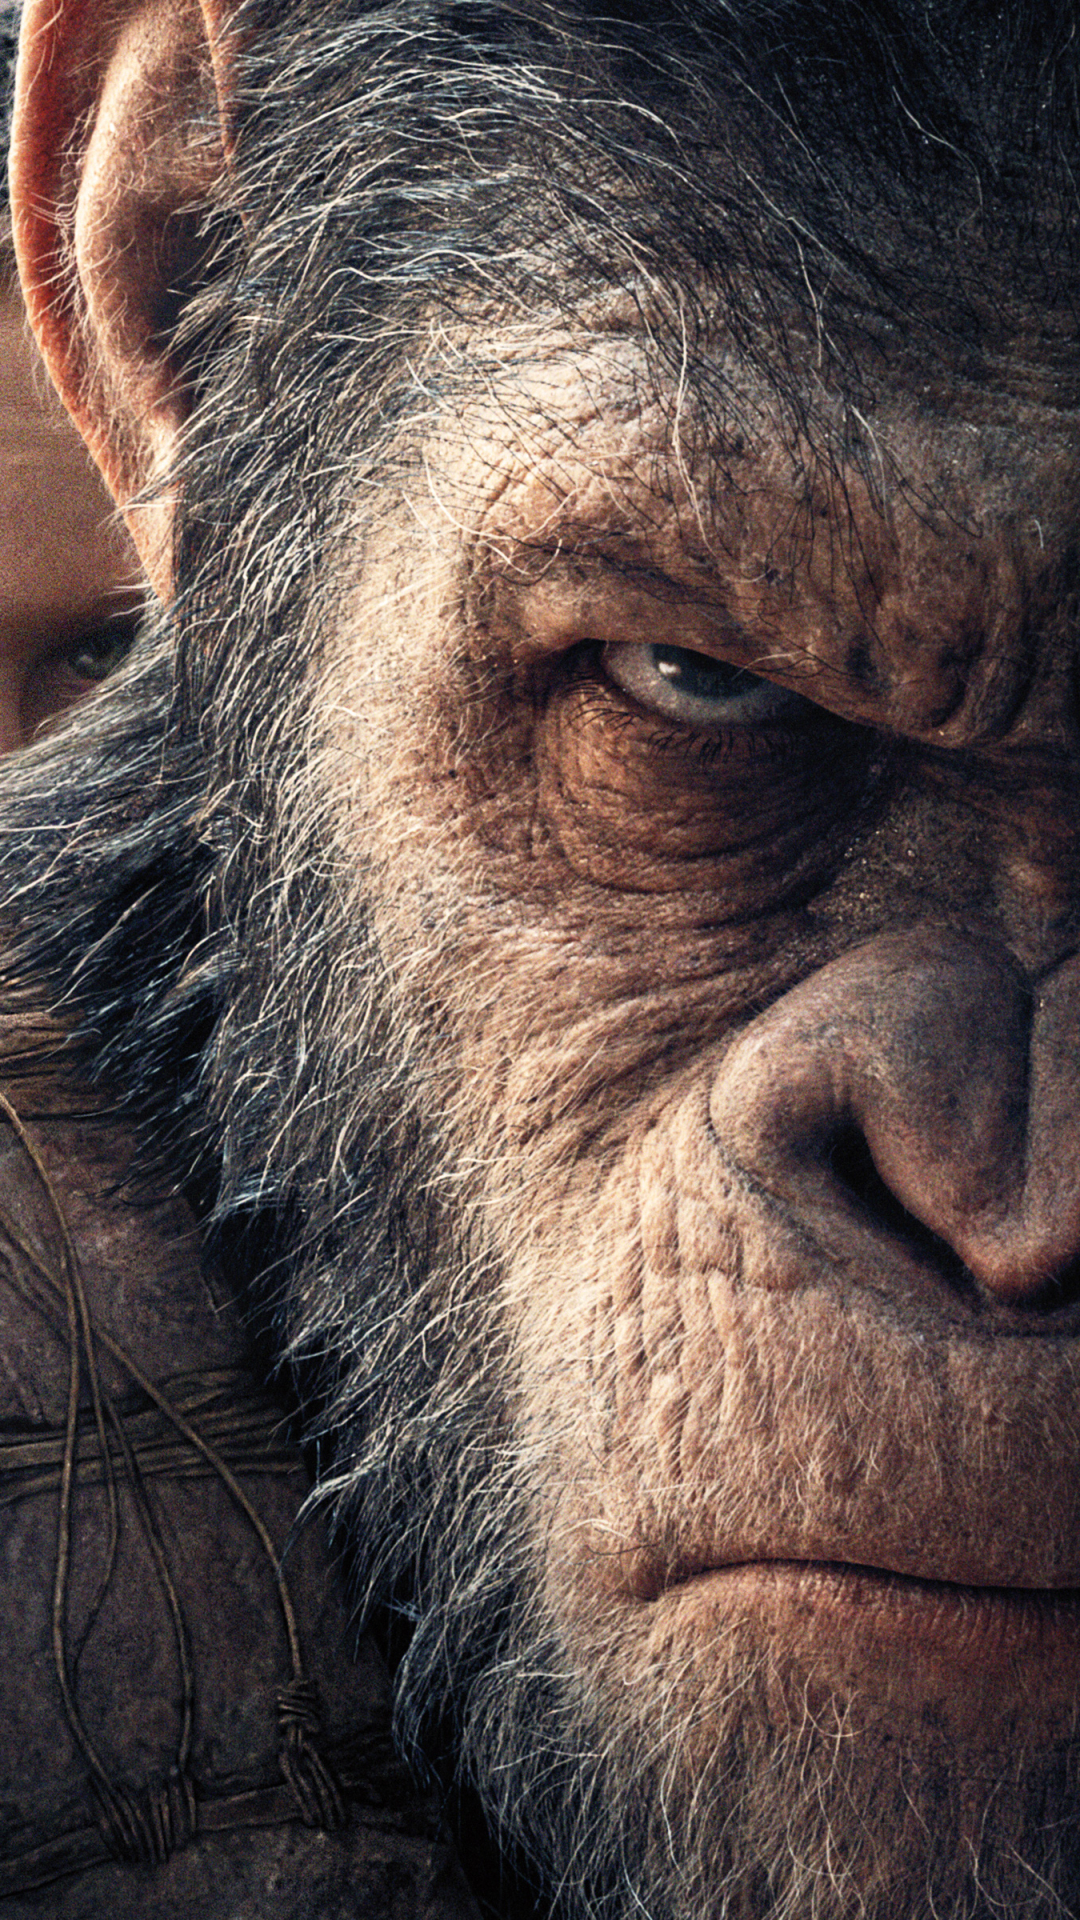 amanecer del planeta de los simios fondo de pantalla,chimpancé común,hocico,primate,de cerca,humano